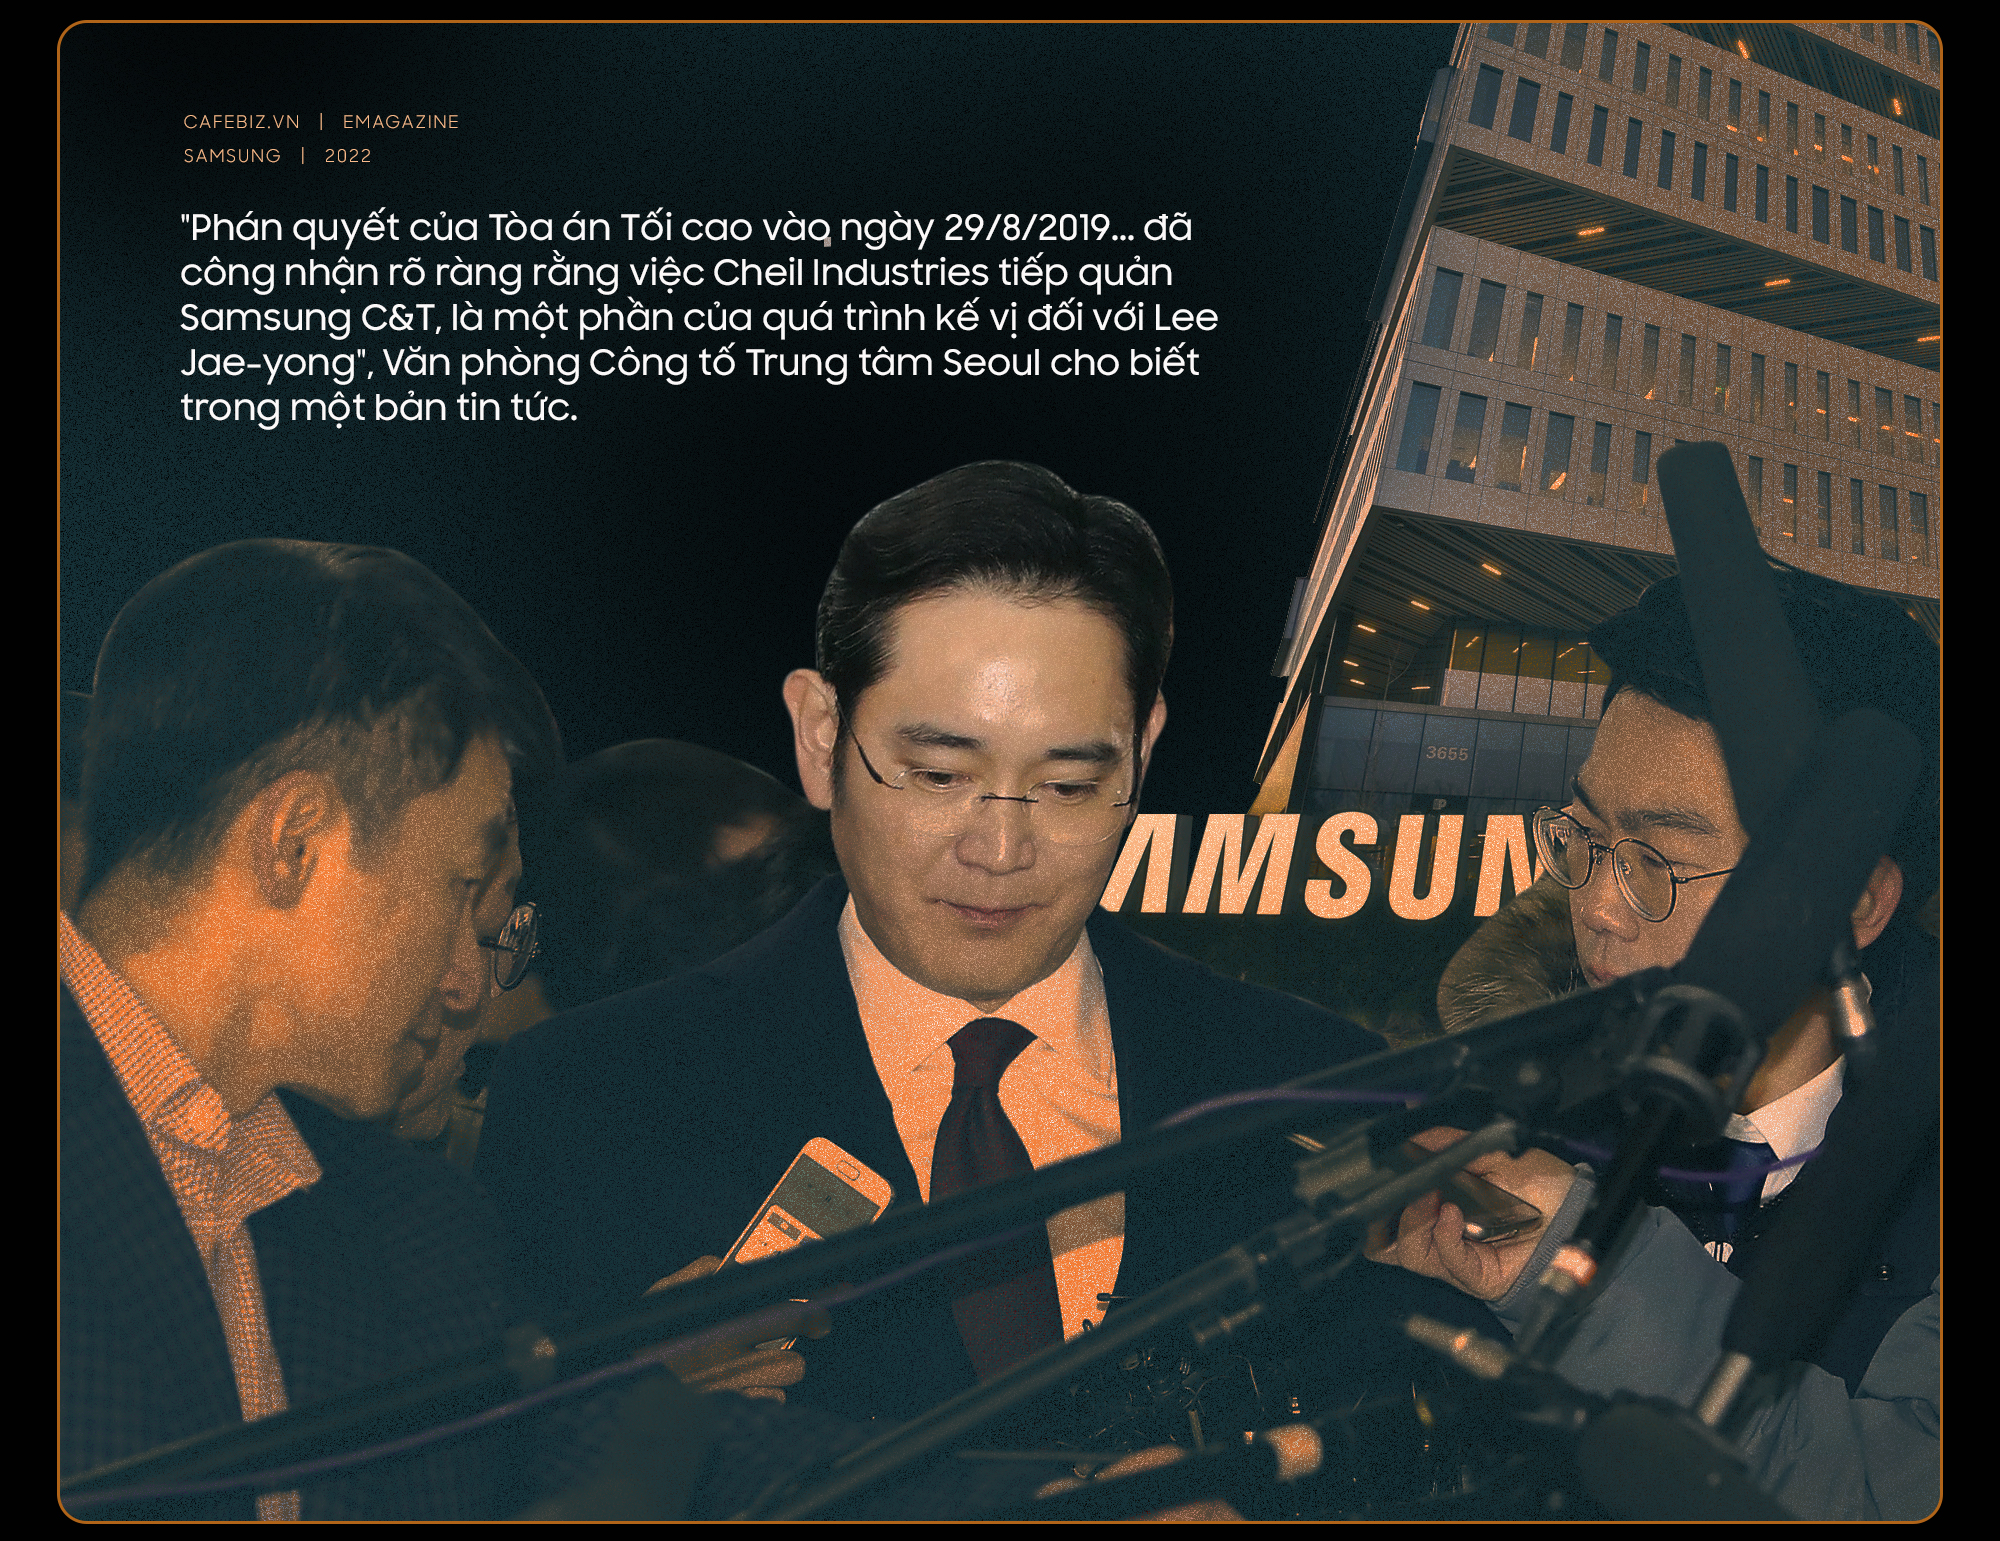 Triều đại của gia tộc họ Lee ở Samsung trên bờ vực sụp đổ - Ảnh 4.